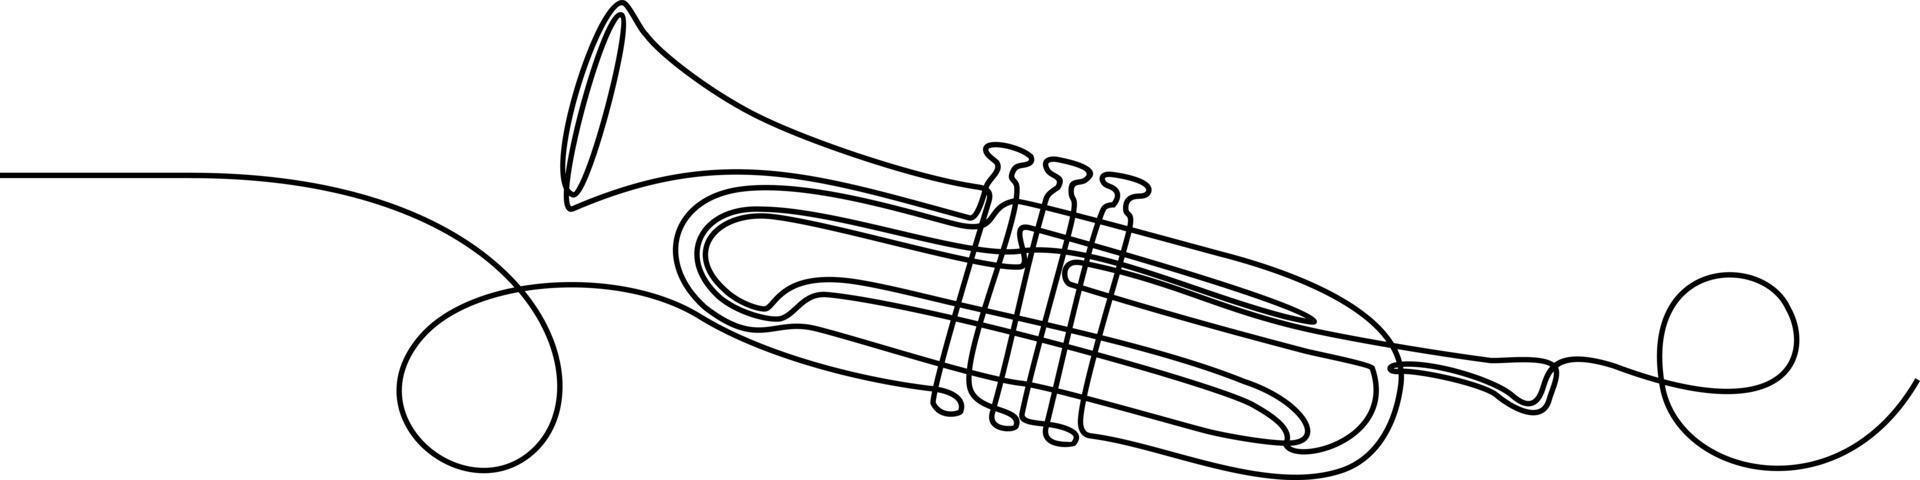 dibujo continuo de una línea de instrumento musical de trompeta vector